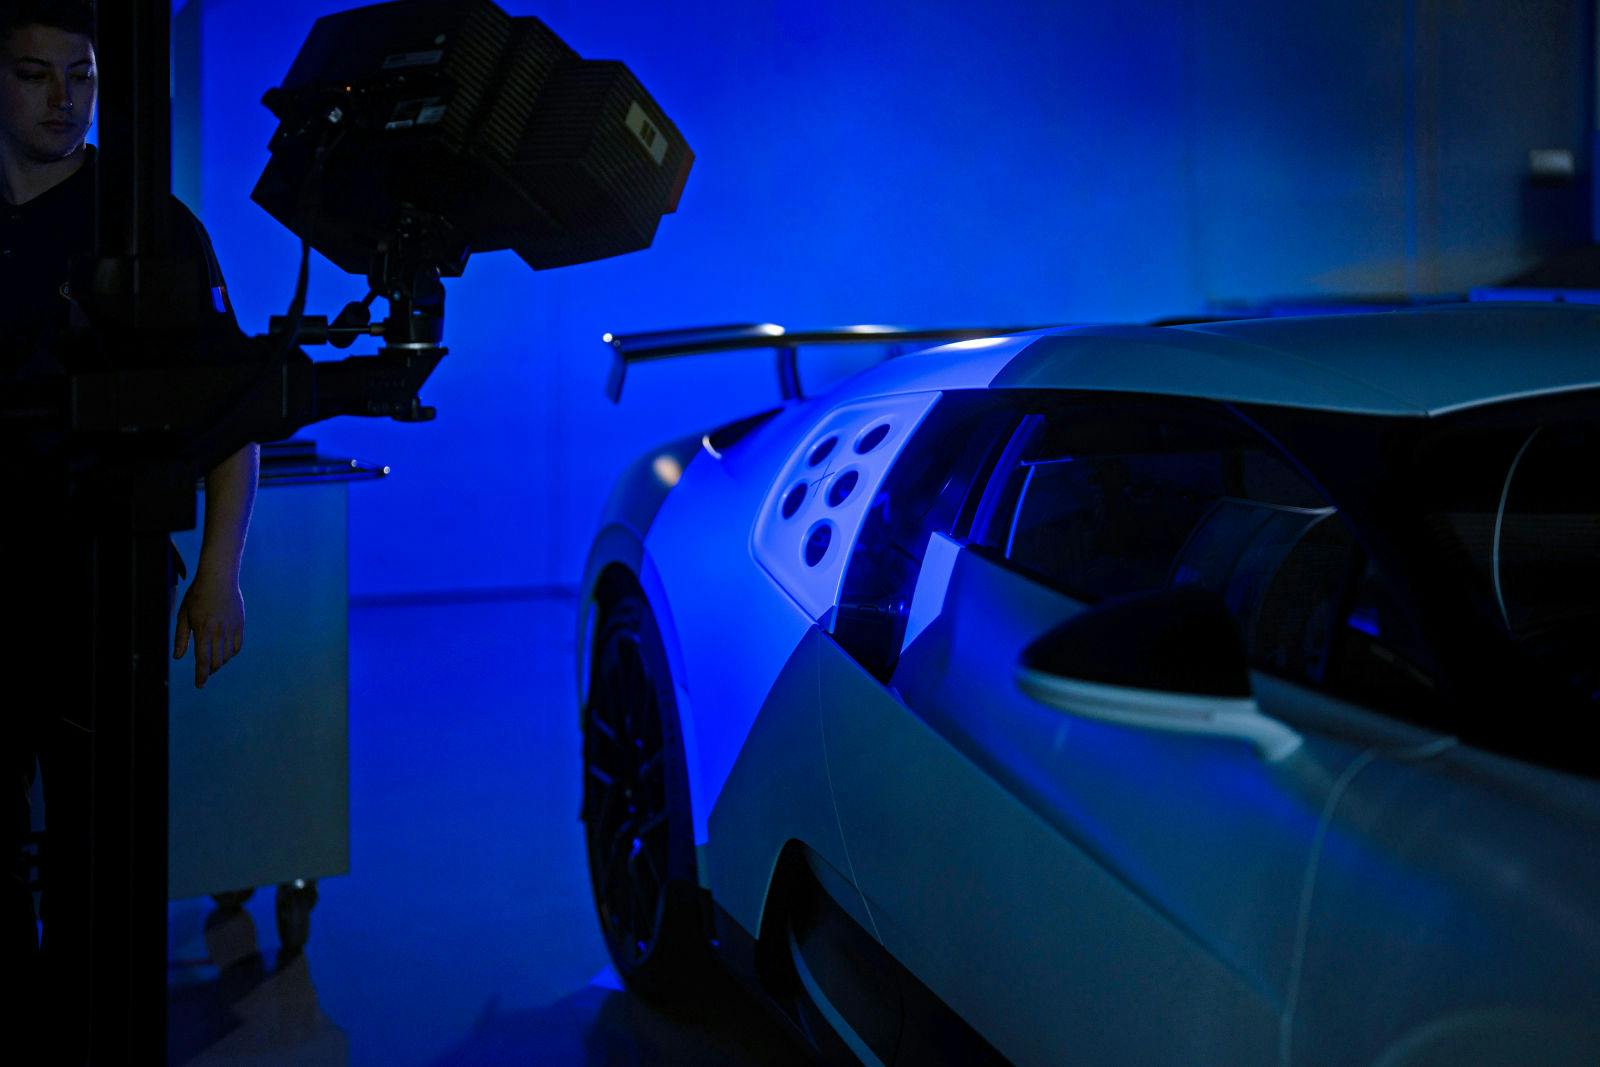 Bei Bugatti arbeitet der Messtechniker mit modernsten Technologien wie dem 3D-Scanning.